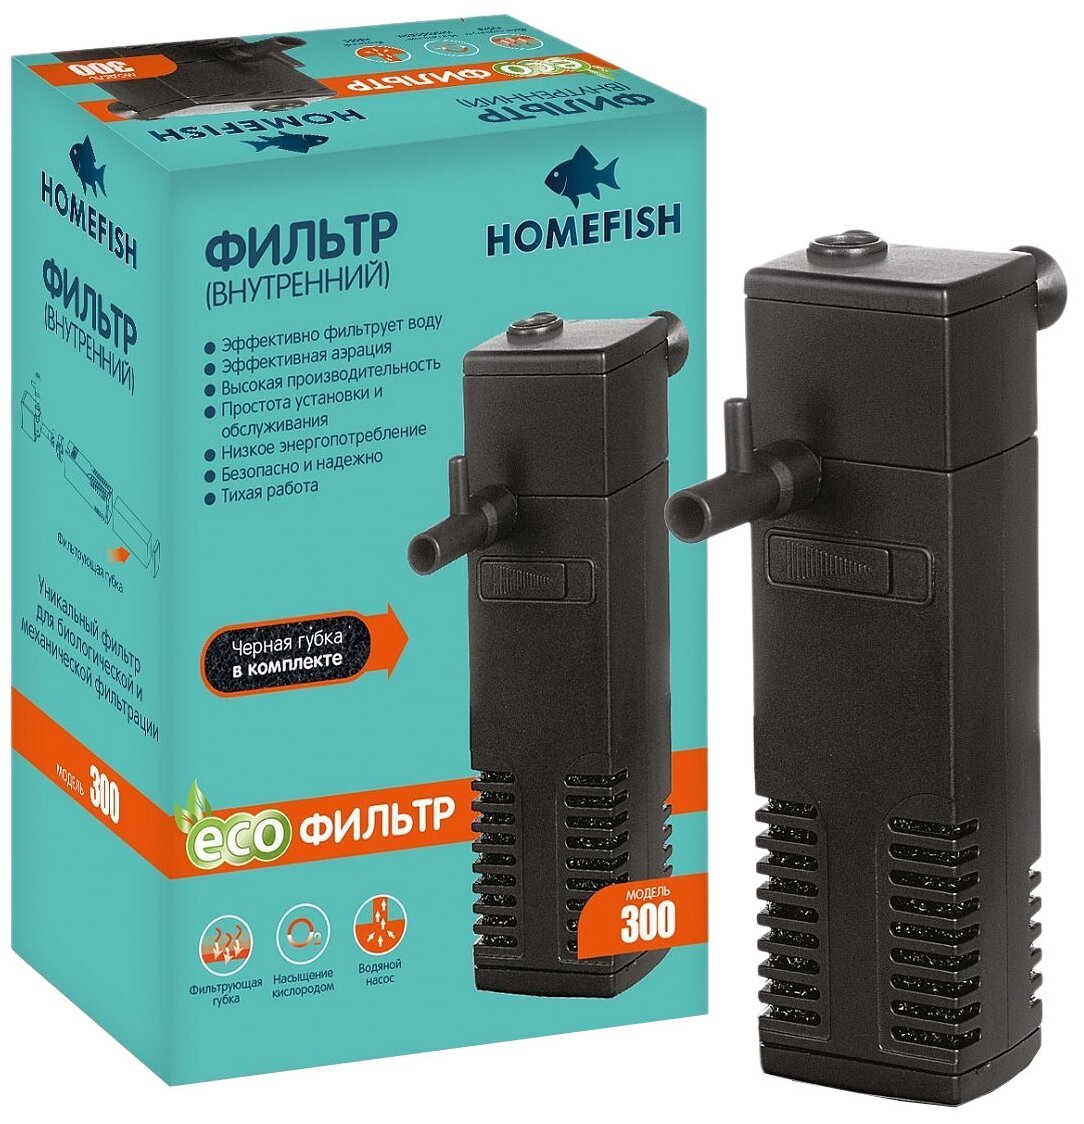 Фильтр внутренний Homefish 300 для аквариума до 40 л (200 л/ч, 3 Вт)